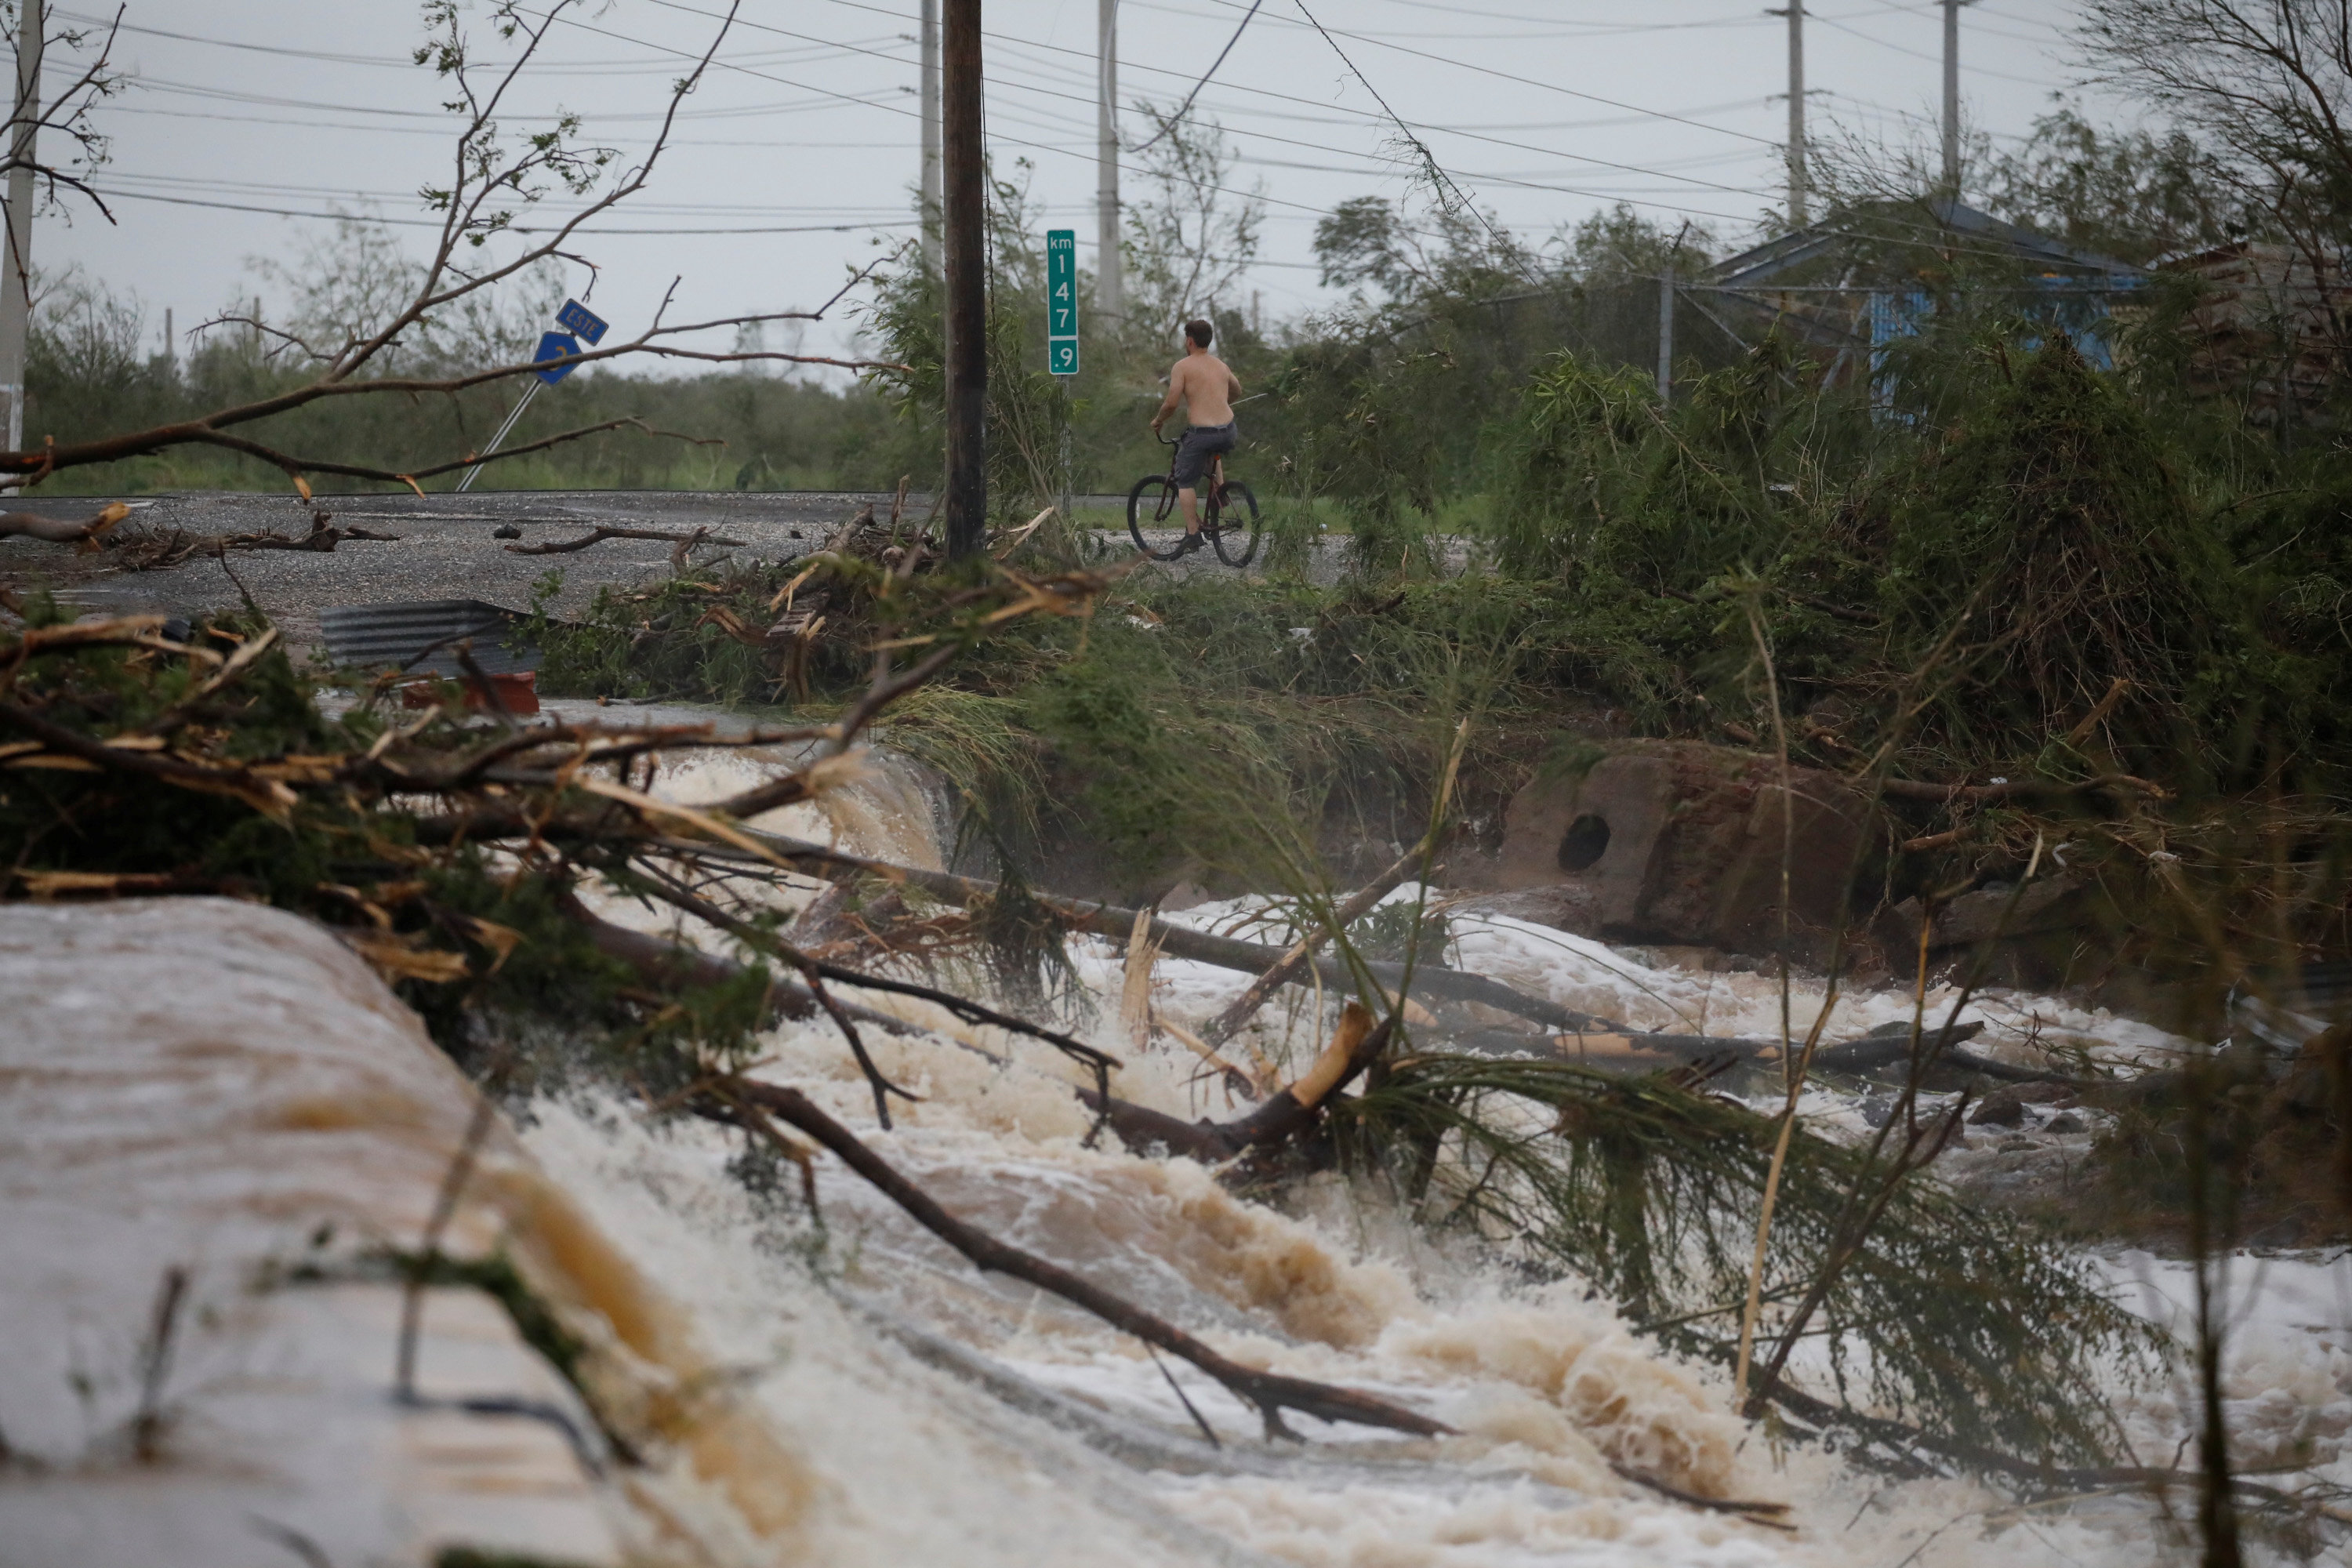 La carretera quedó inundada tras el desbordamiento de un río en Guayama, Puerto Rico (REUTERS/Carlos Garcia Rawlins)